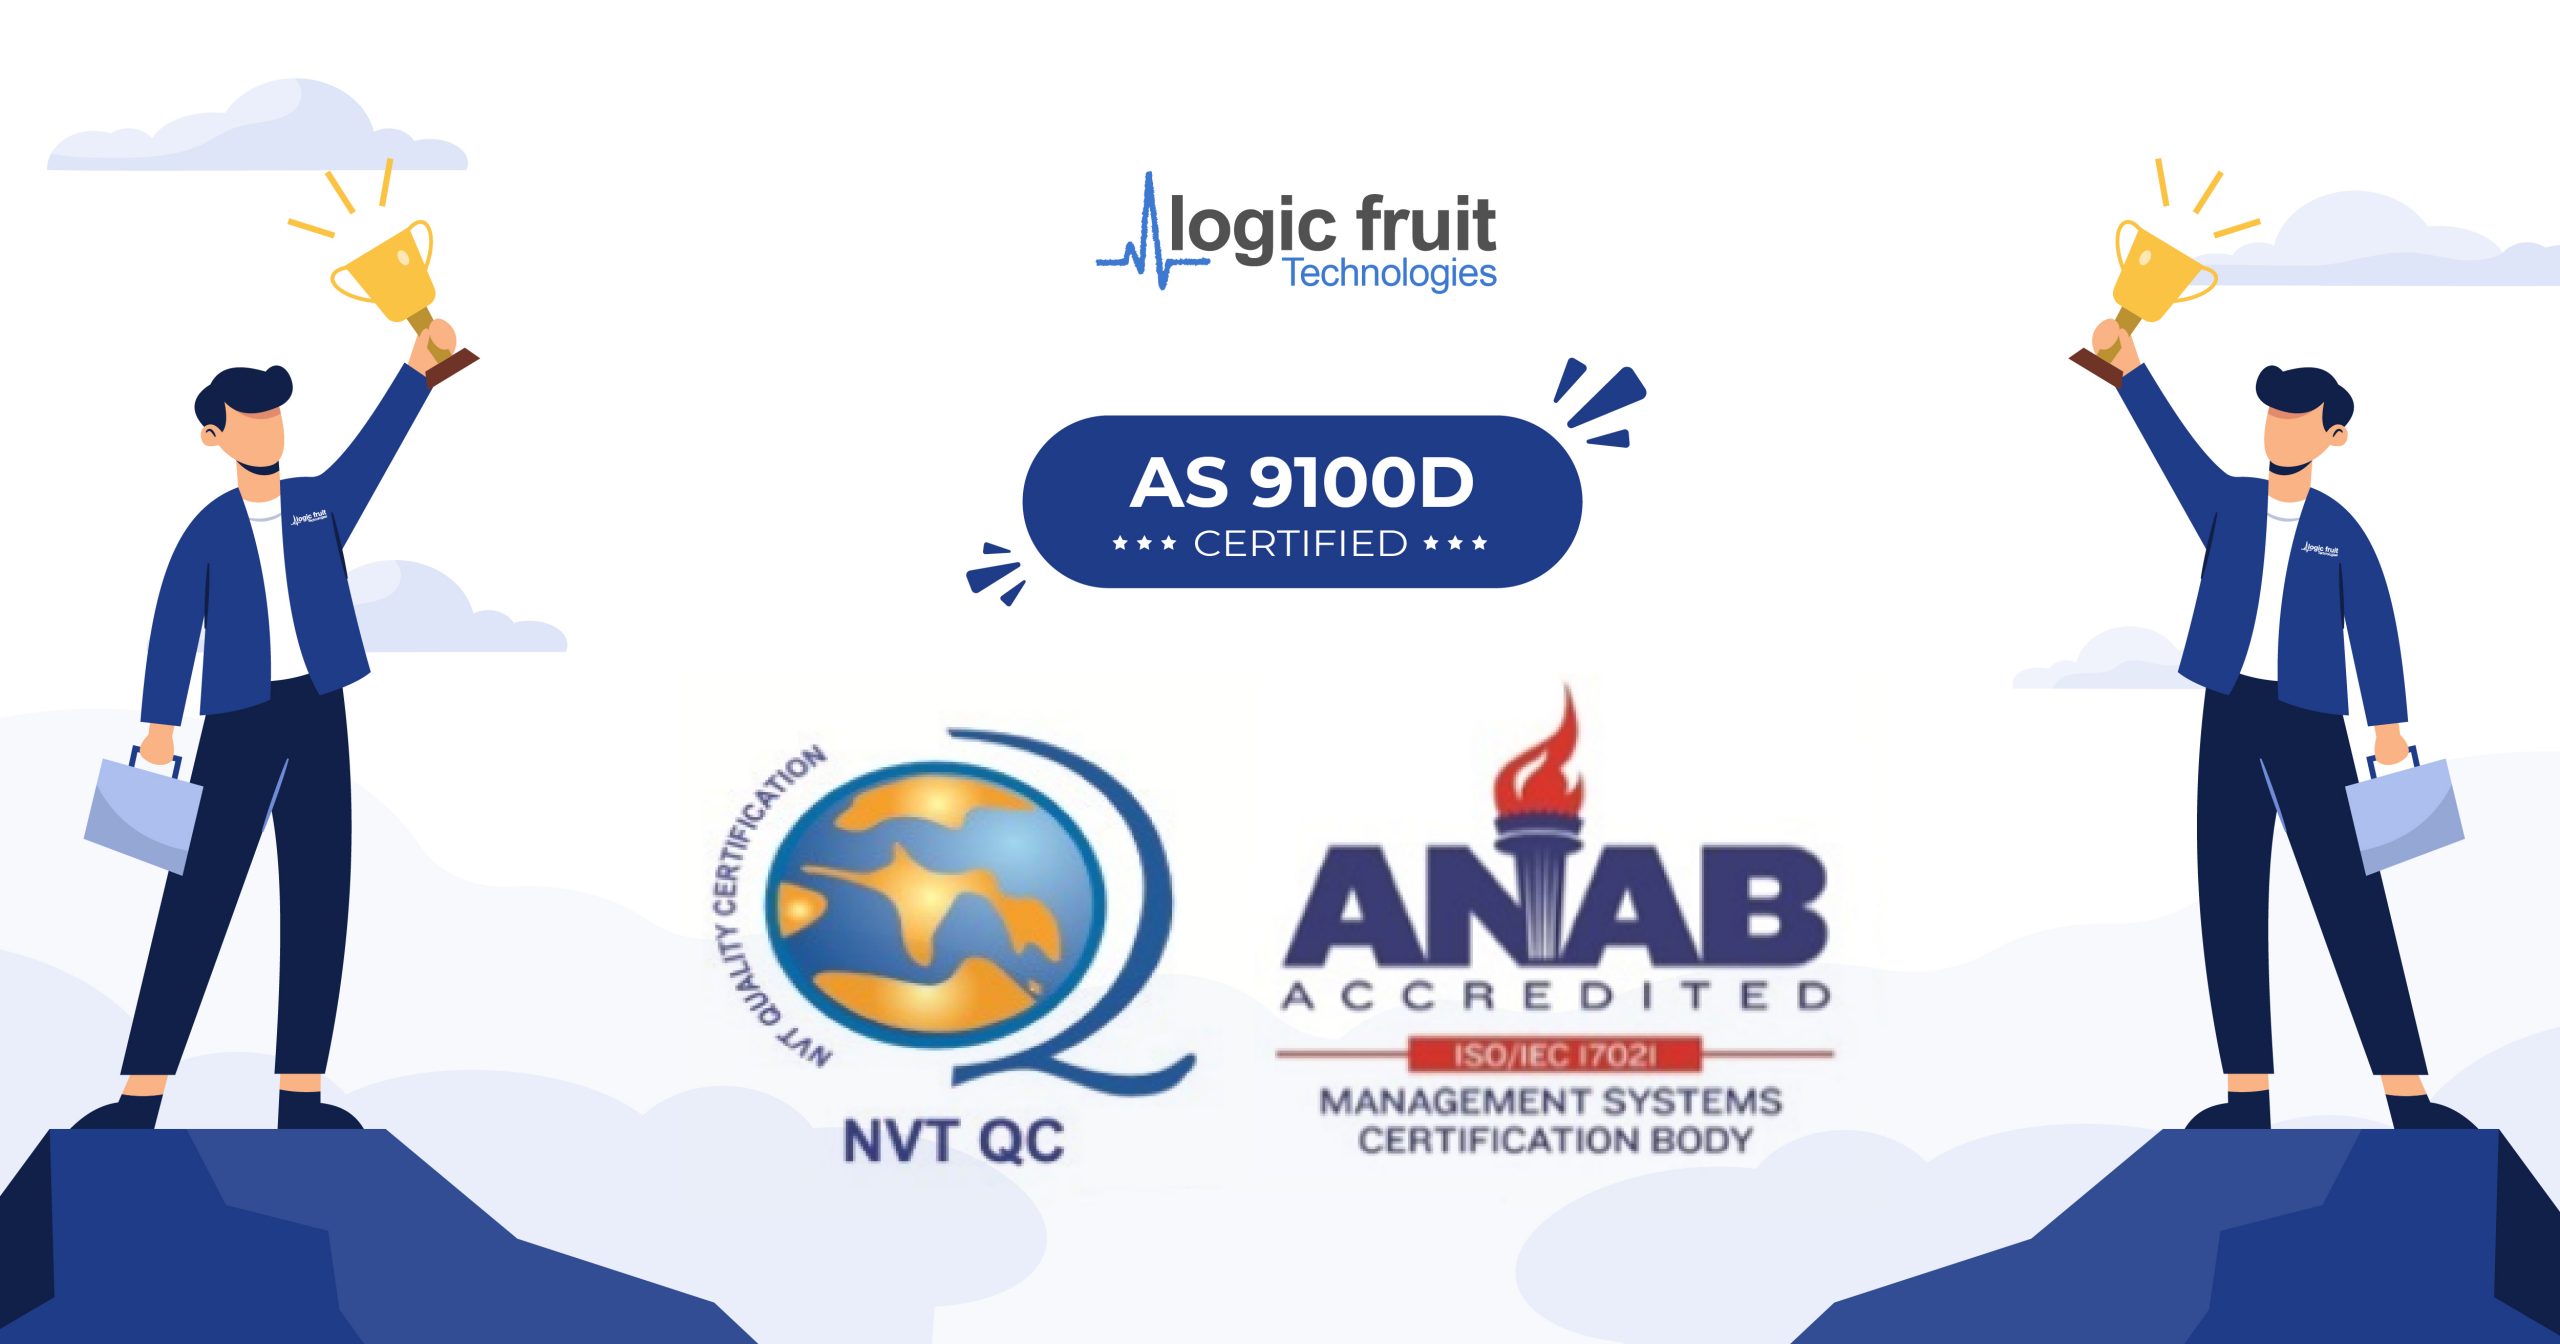 Logic Fruit is AS 9100D Certified